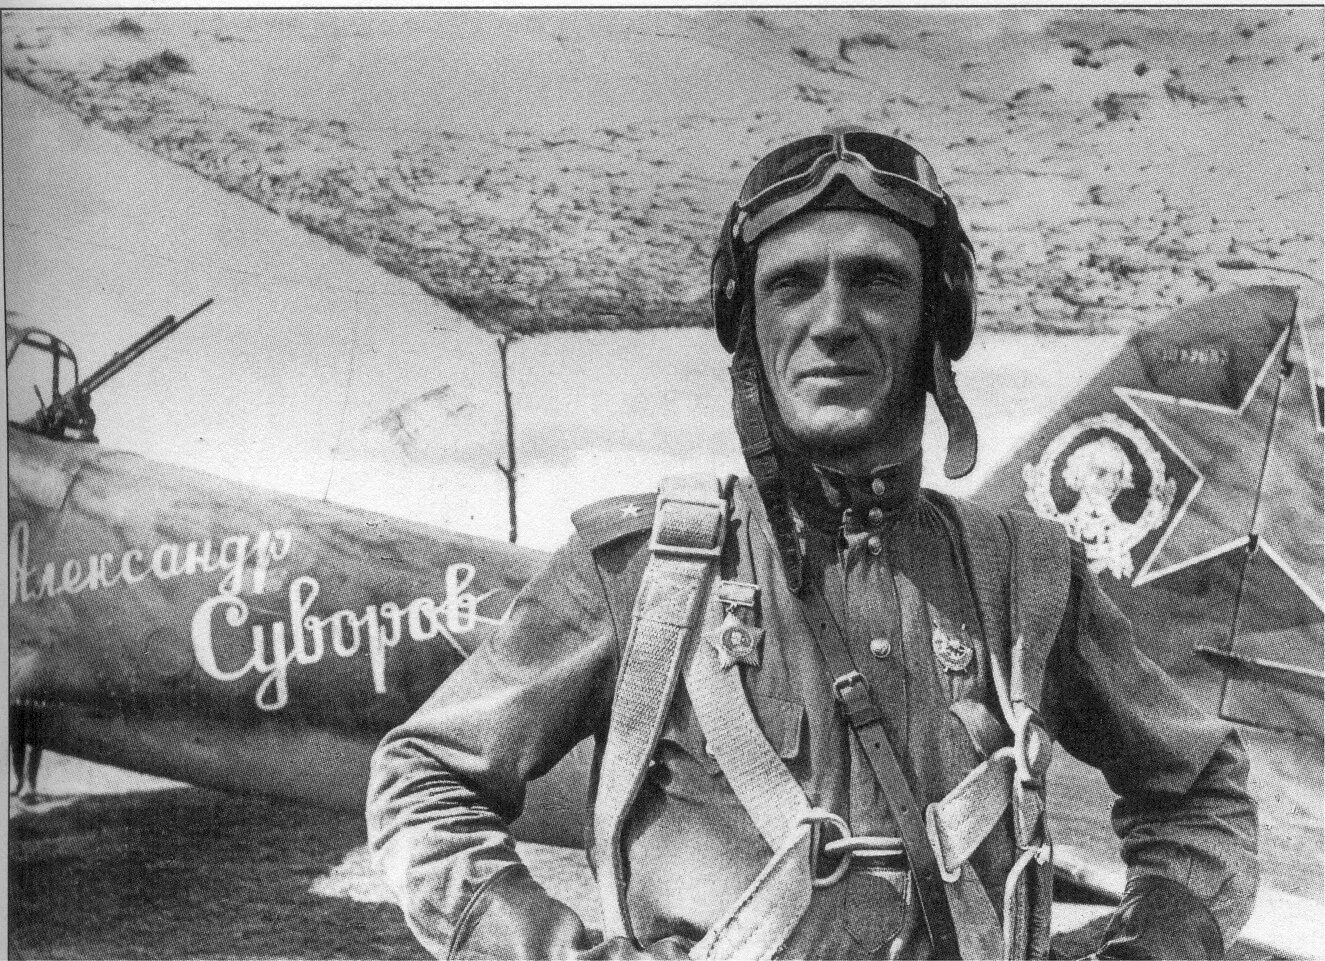 Летчик самолета ил 2. Военный летчик пилот самолета ил-2. Лётчики герои Великой Отечественной войны ил 2.